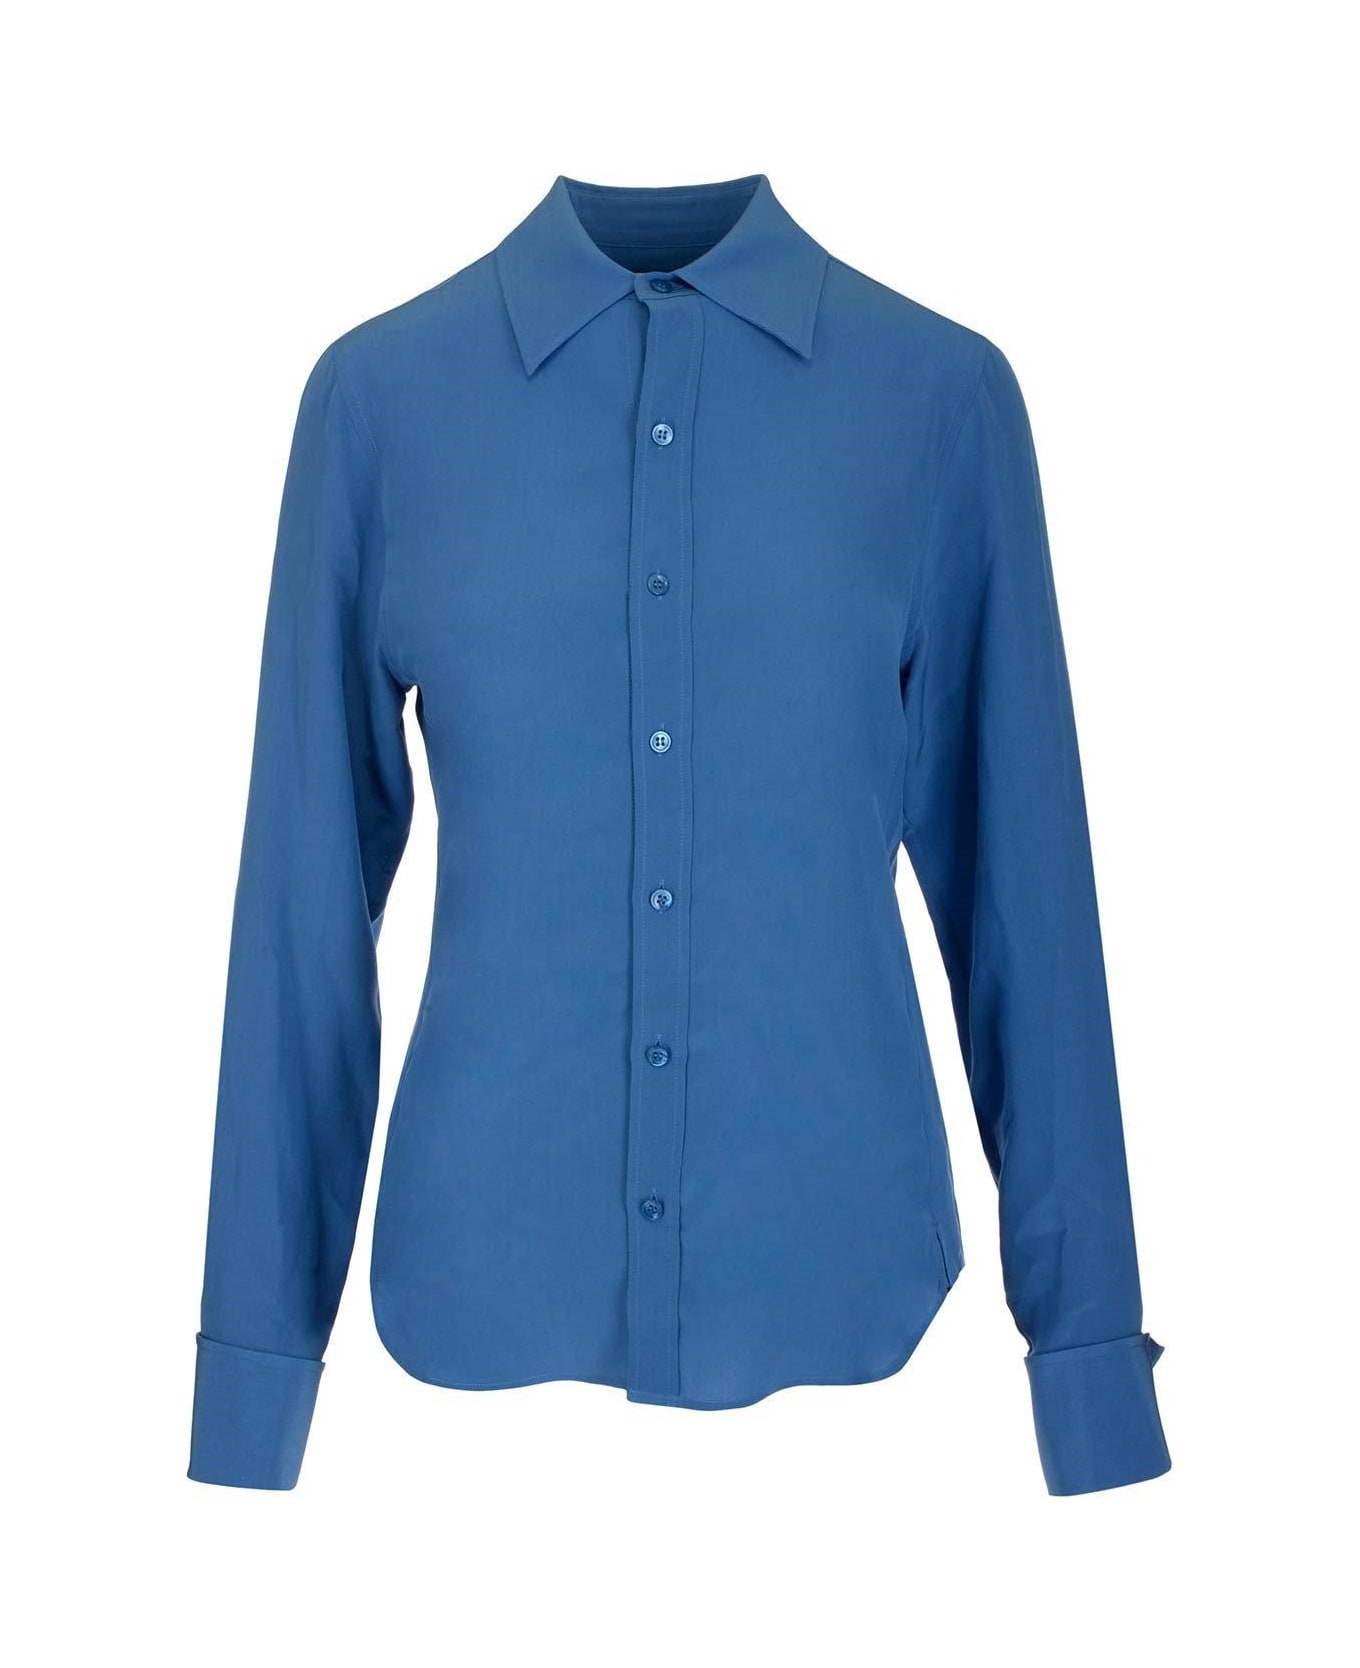 Saint Laurent Crepe De Chine Fitted Shirt - Deep blue シャツ